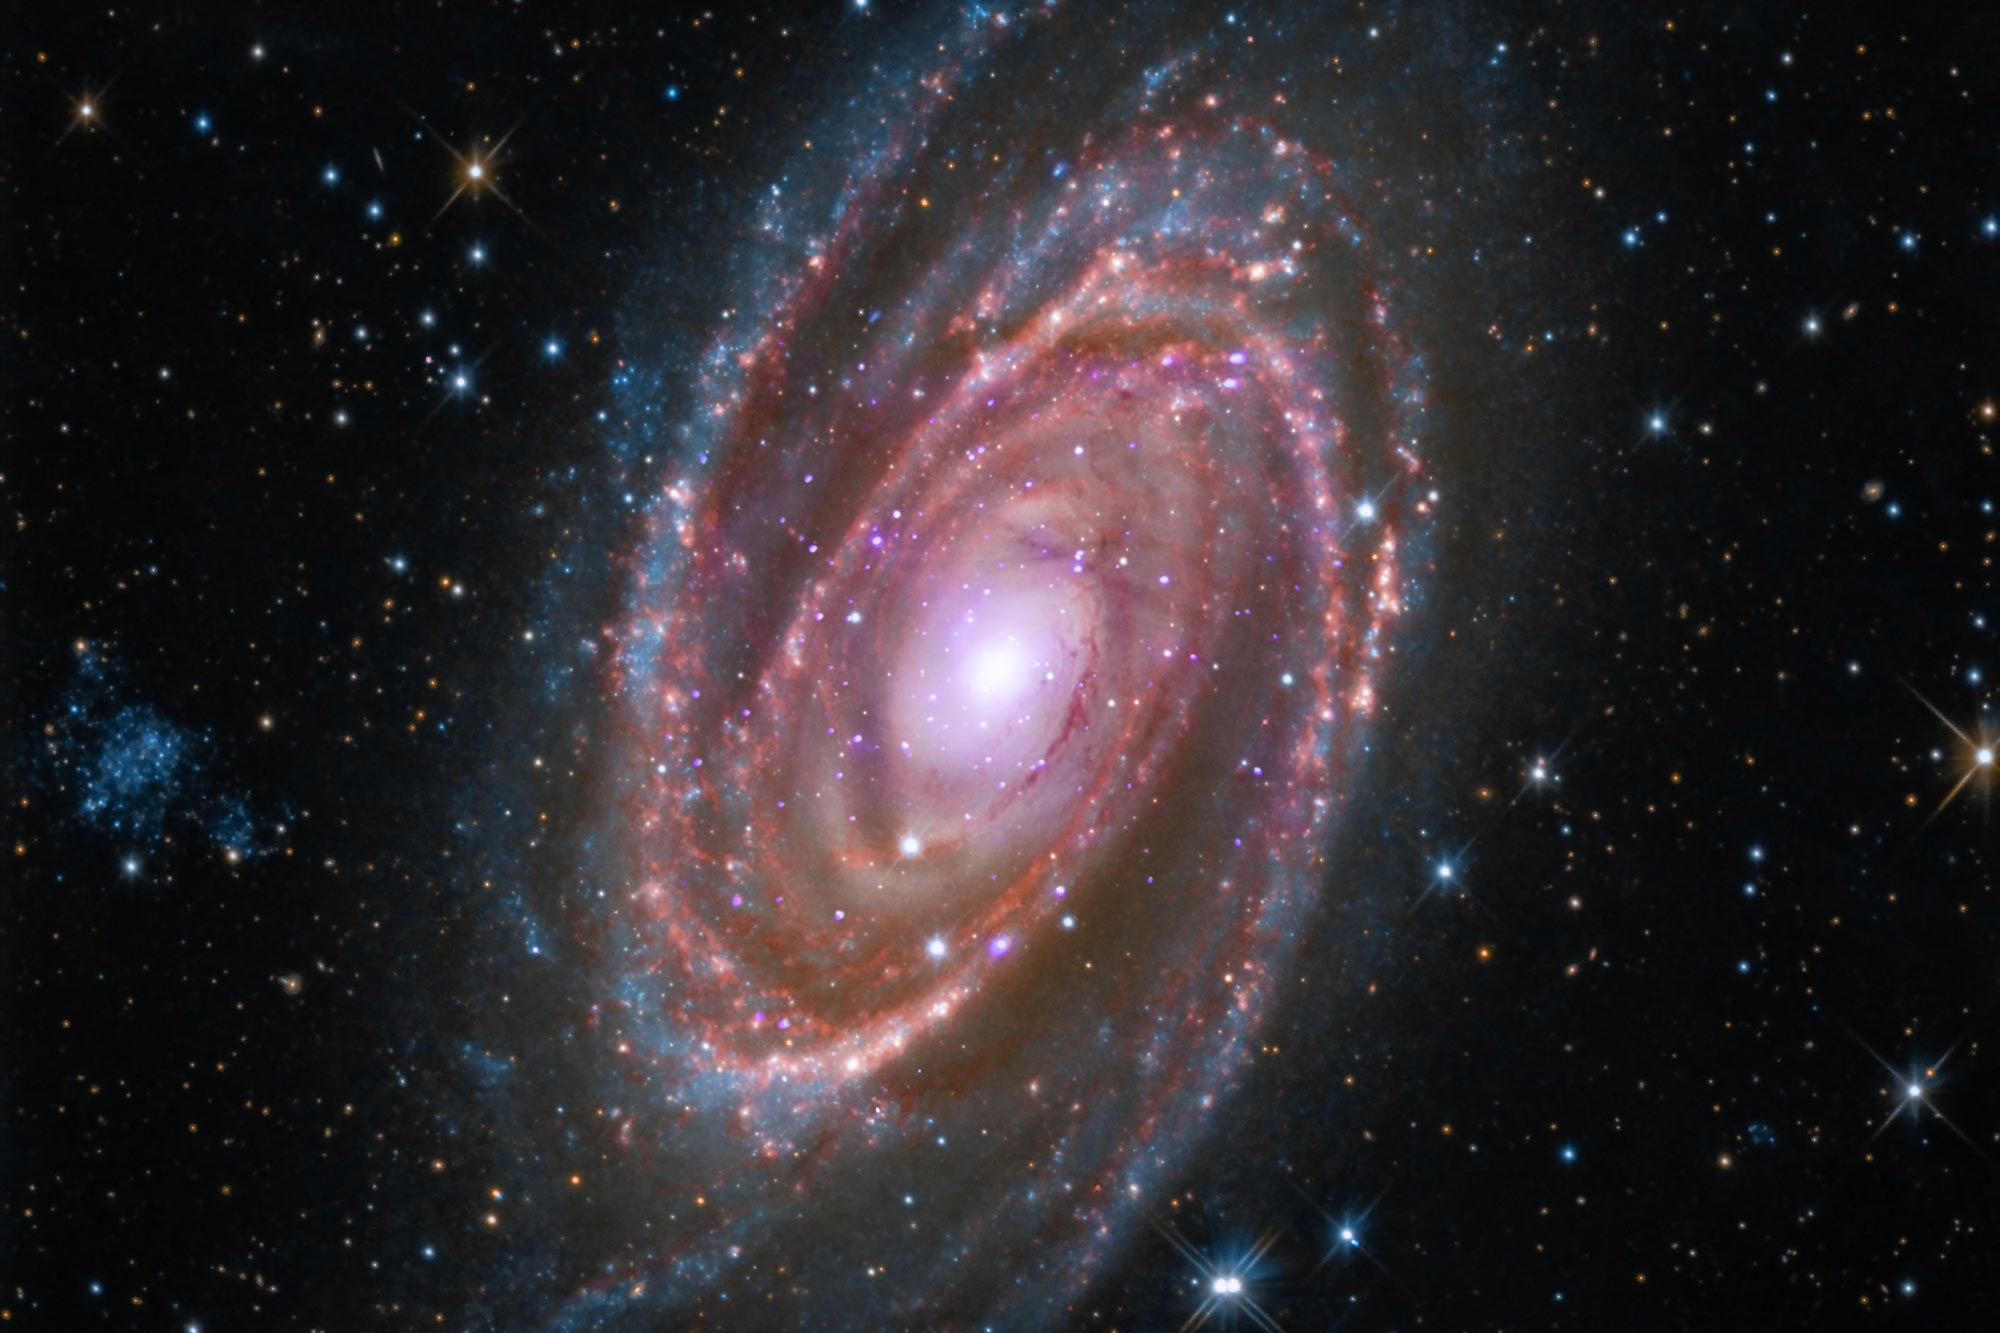 La galaxia espiral M81, que es similar en tamaño y forma a nuestra propia galaxia, la Vía Láctea.  (Foto cortesía de la NASA)